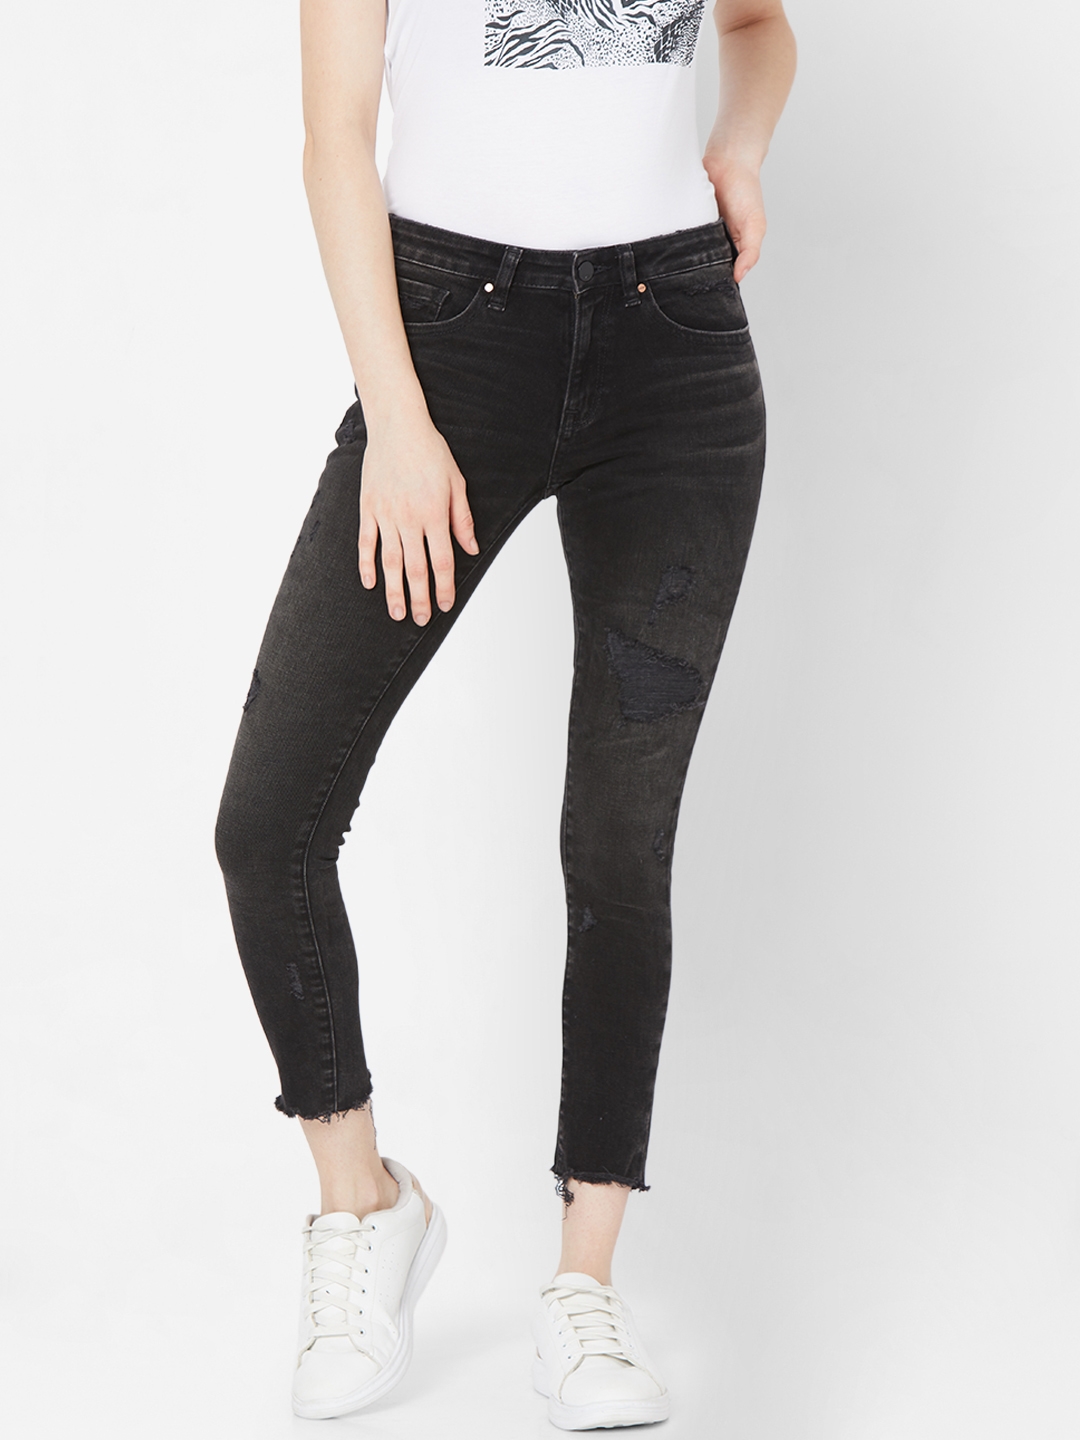 spykar | Women's Black Lycra Solid Ripped Jeans 0